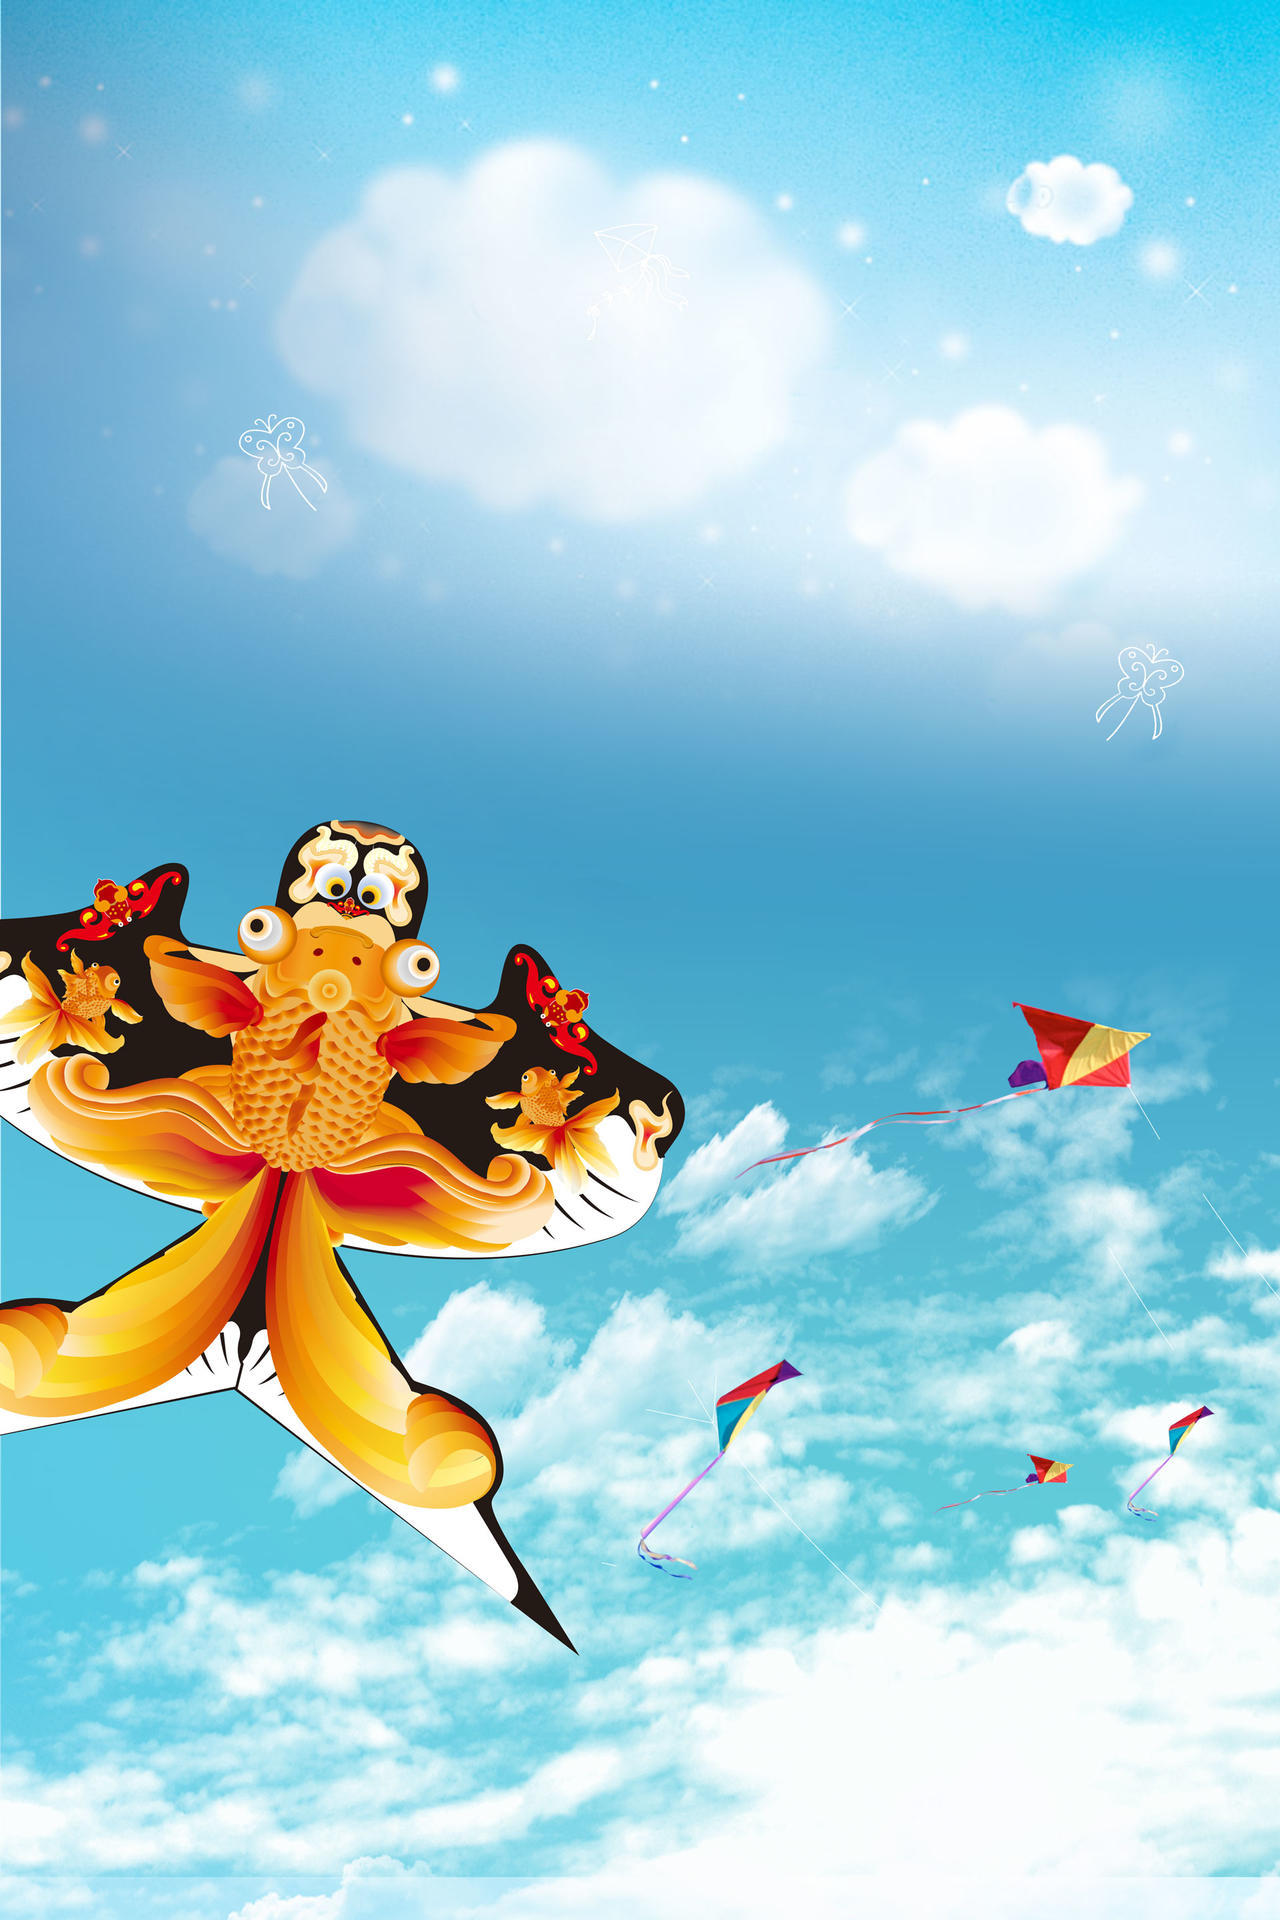 空中飞舞风筝节文化蓝色海报背景